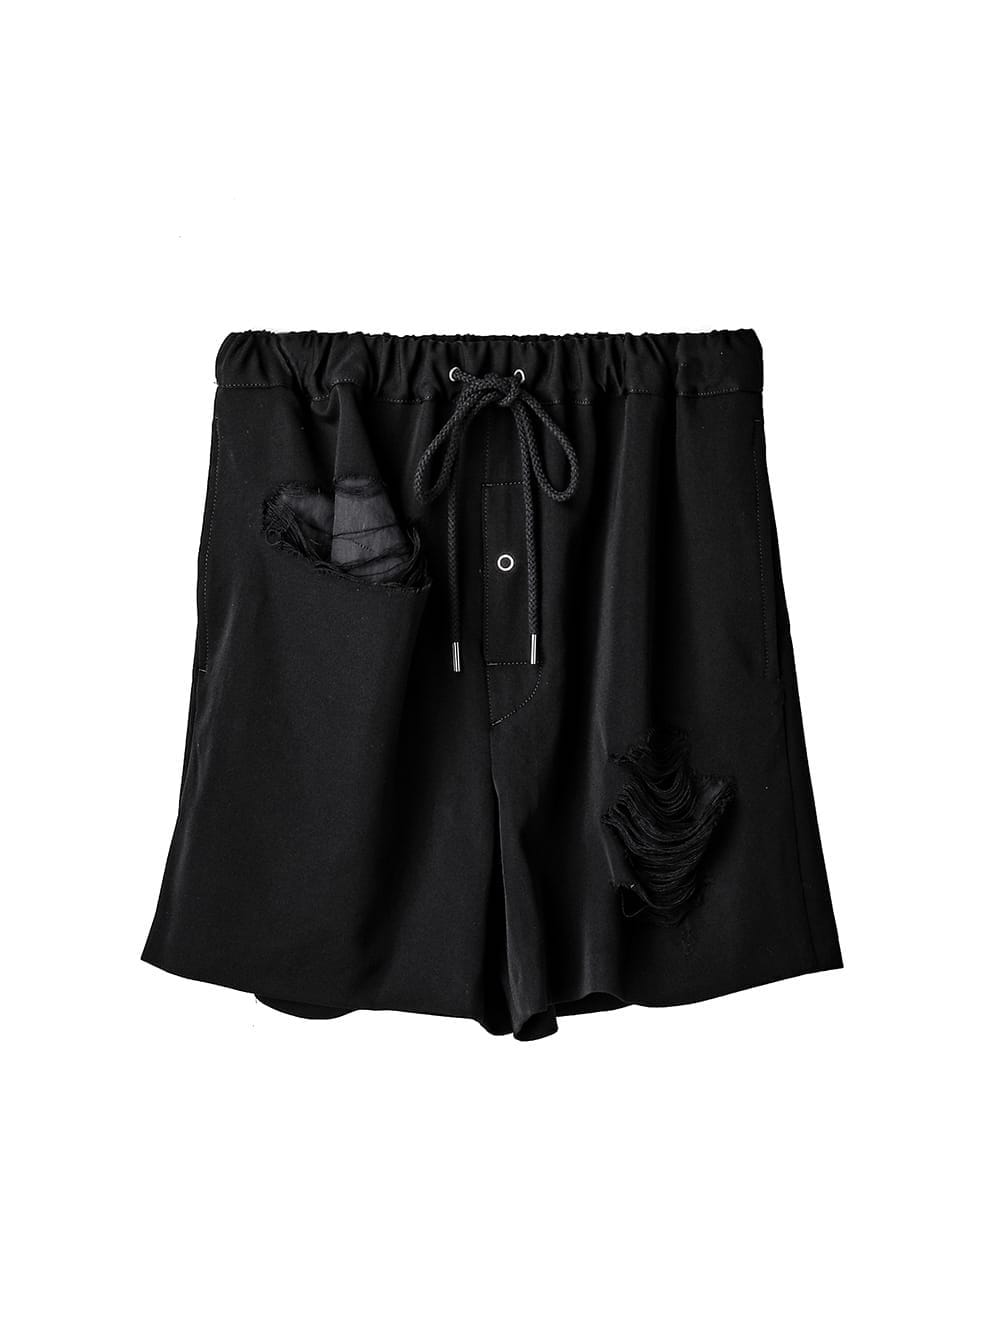 trunks shorts.(clash)